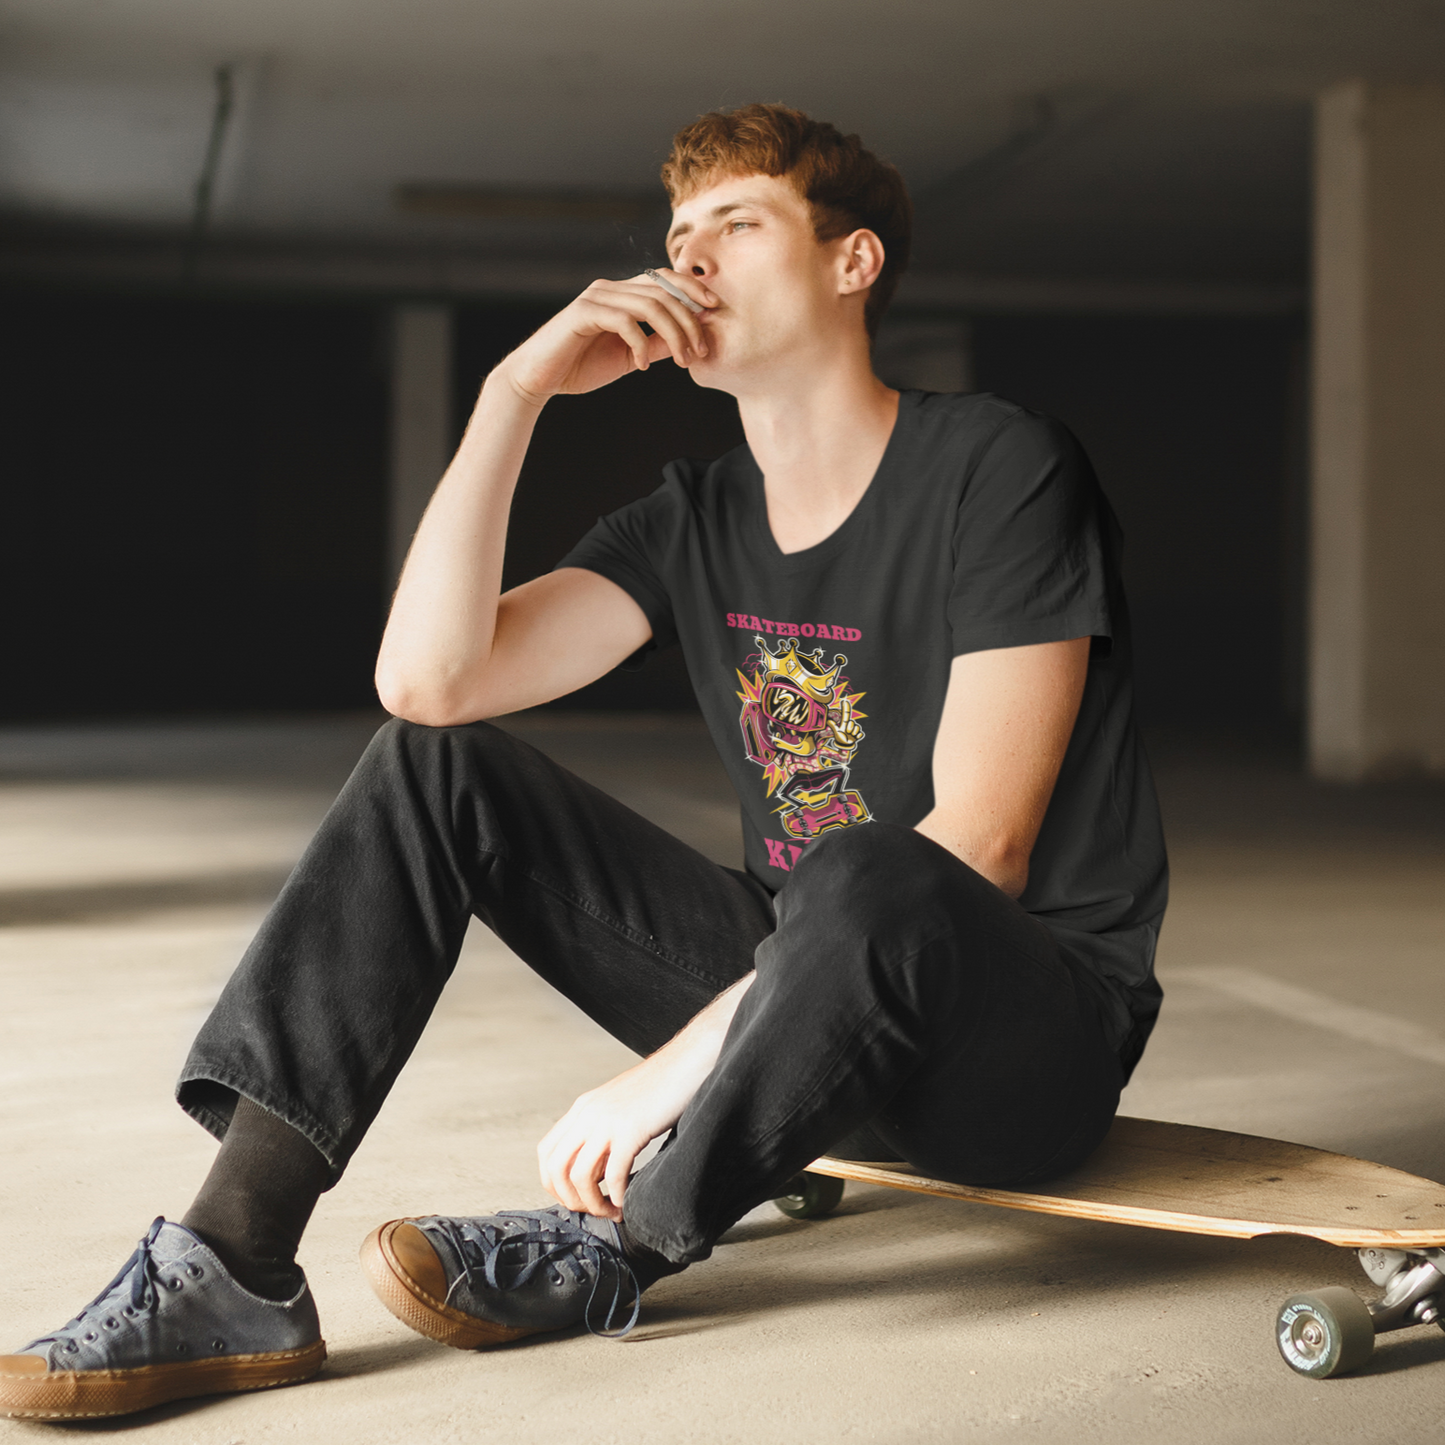 Skateboard King T-Shirt